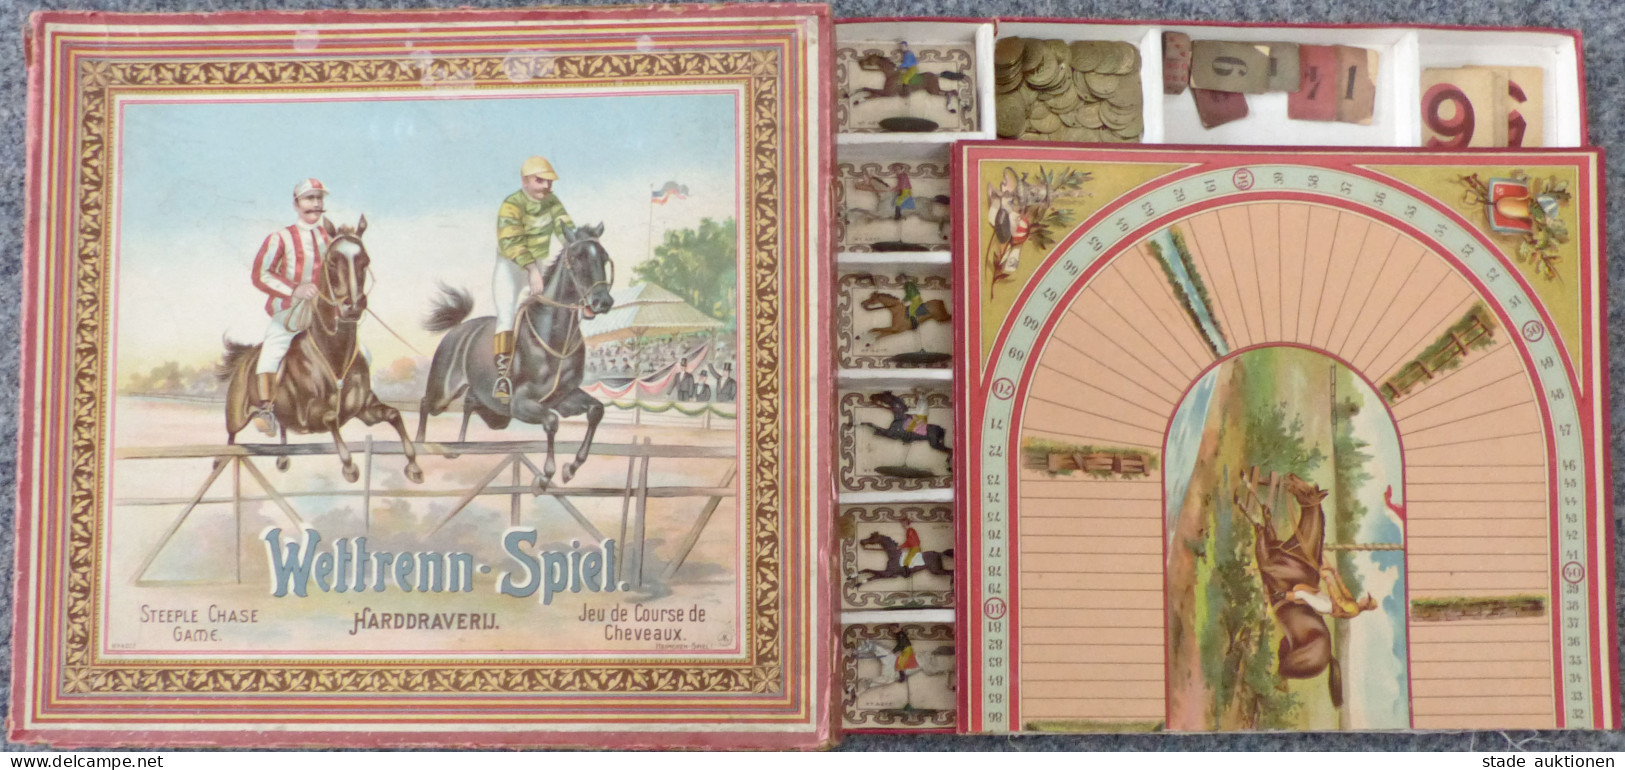 Spielzeug Wettrenn-Spiel Von Heimchen-Spiel 1902, Mit Original-Schachtel Und Anleitung, Alle Pferde Und Spielgeld Vorhan - Speelgoed & Spelen